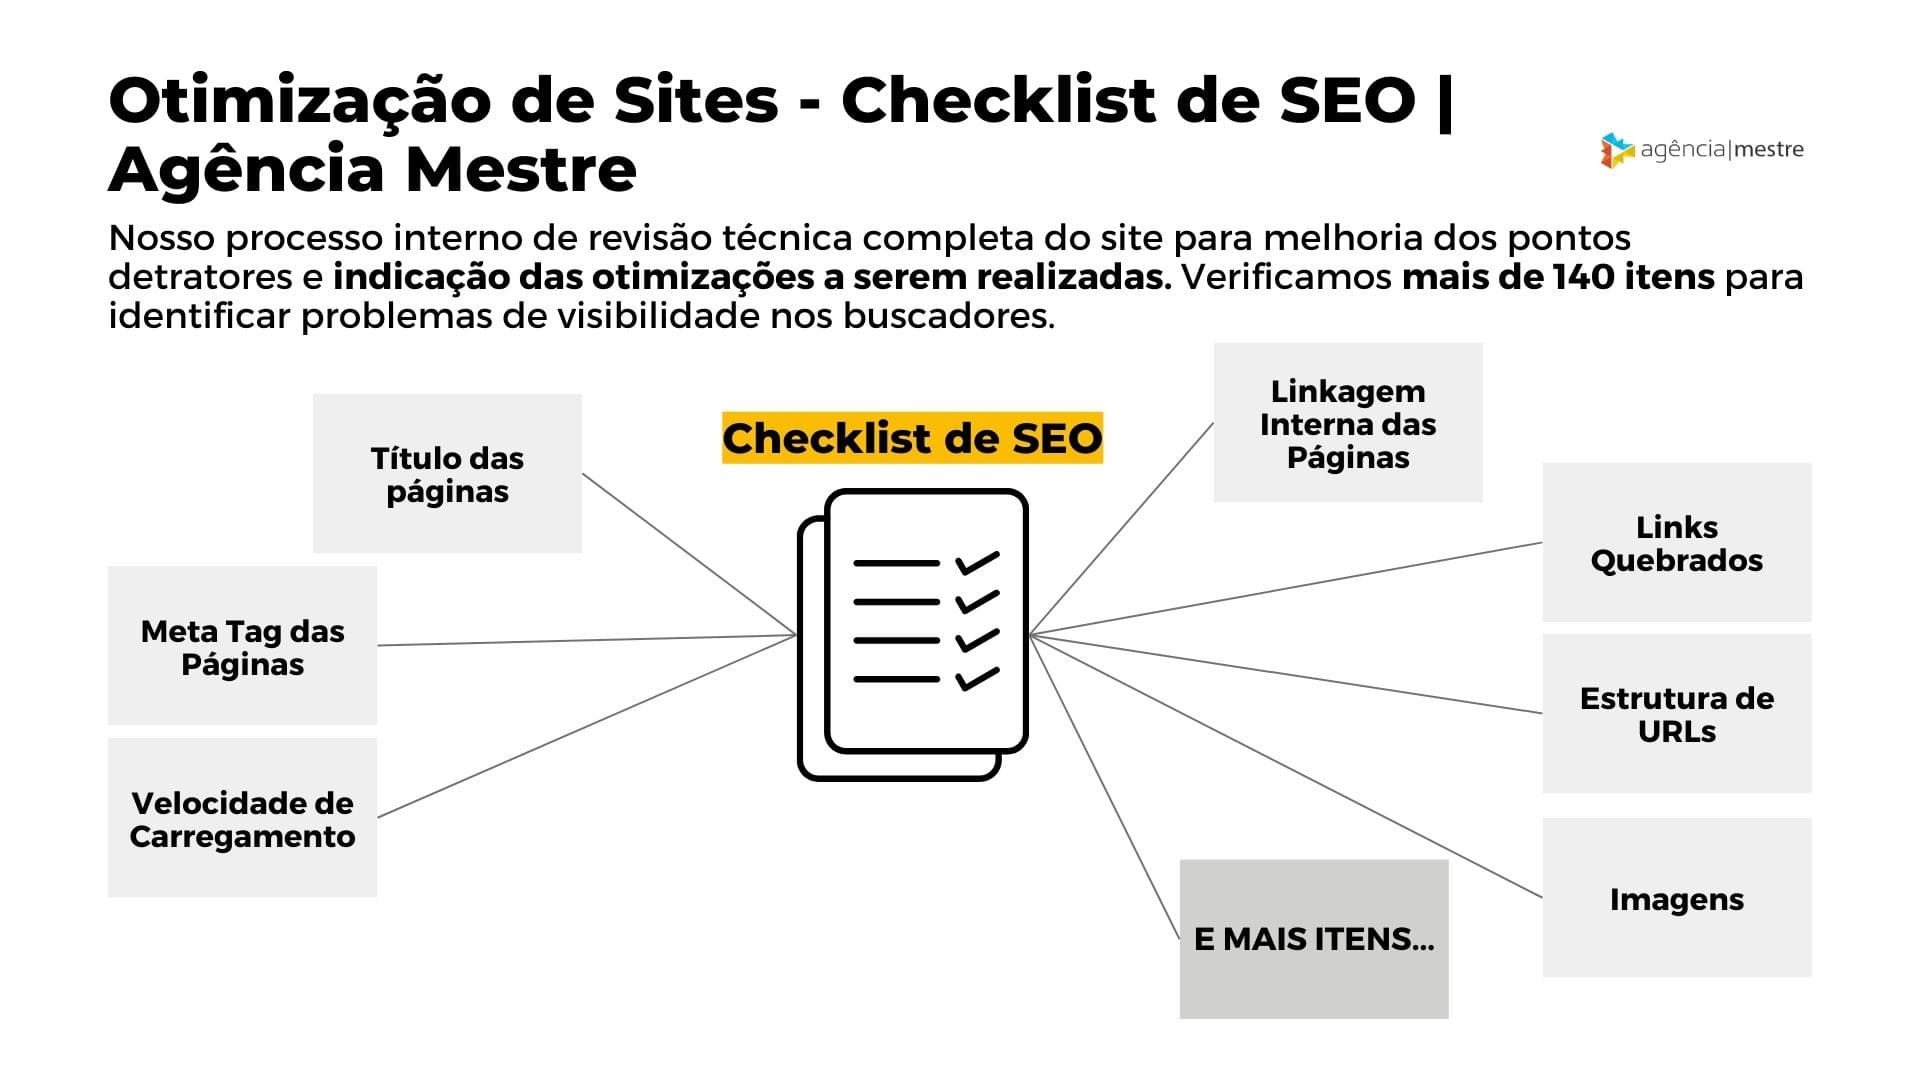 Otimização de Sites - Checklist de SEO da Agência Mestre